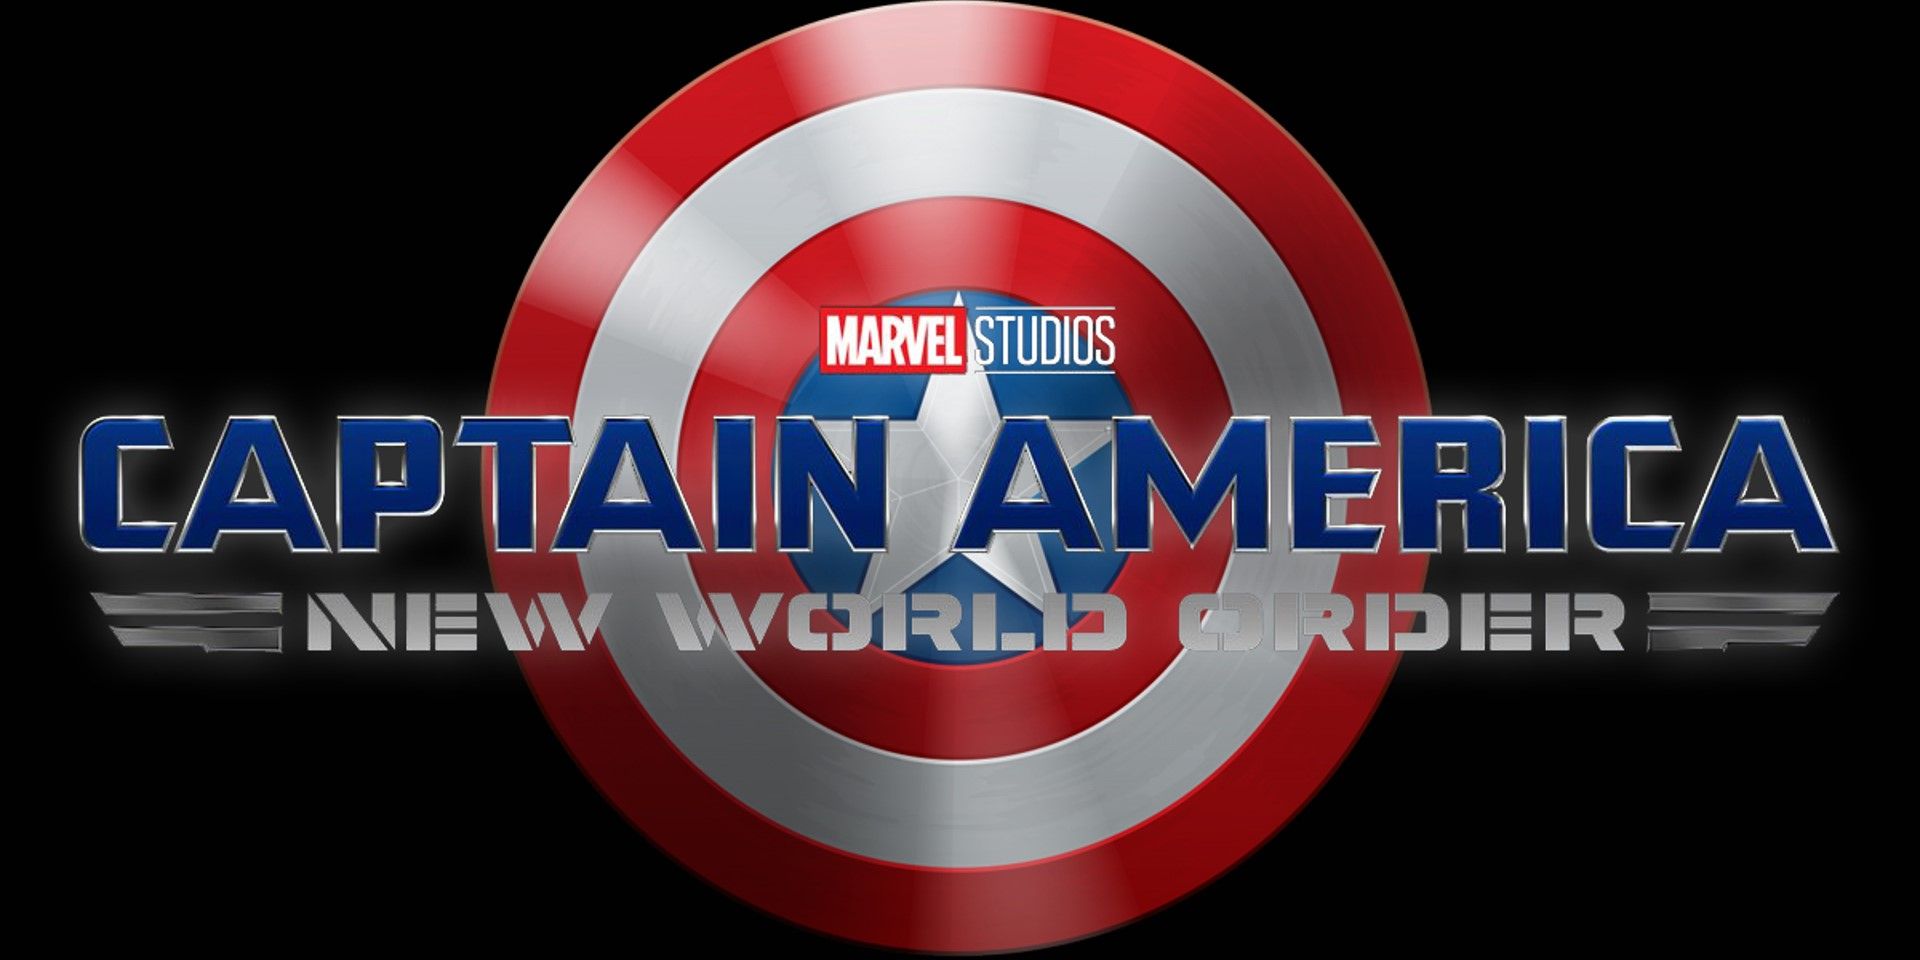 Marvel's Captain America: New World Order promotional movie banner